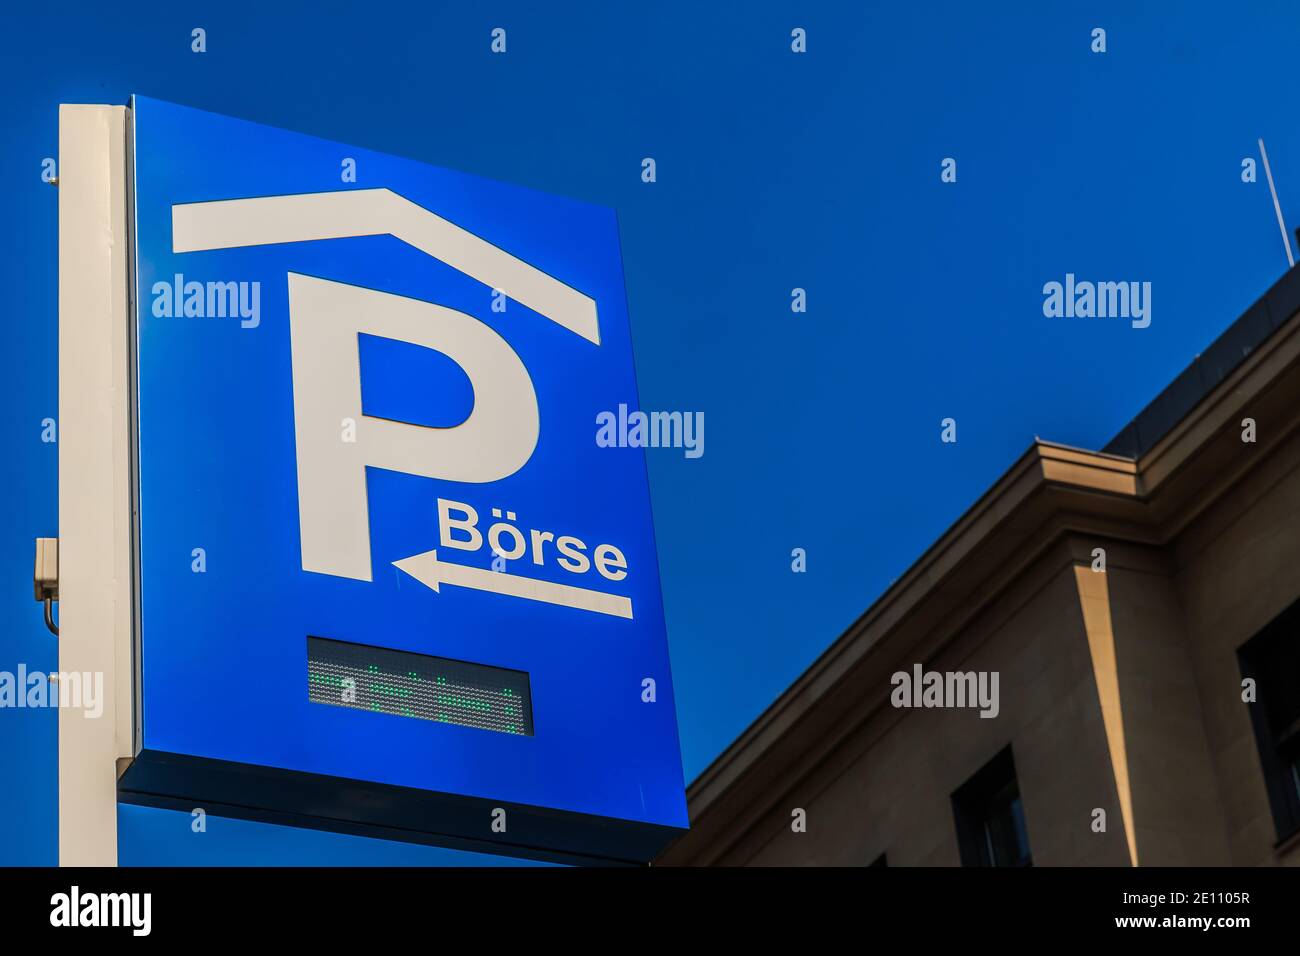 Signalisation routière sur le parking avec inscription LED. Panneau de stationnement bleu de la Bourse de Francfort sur un poteau. Ciel bleu avec façade de maison en arrière-plan Banque D'Images